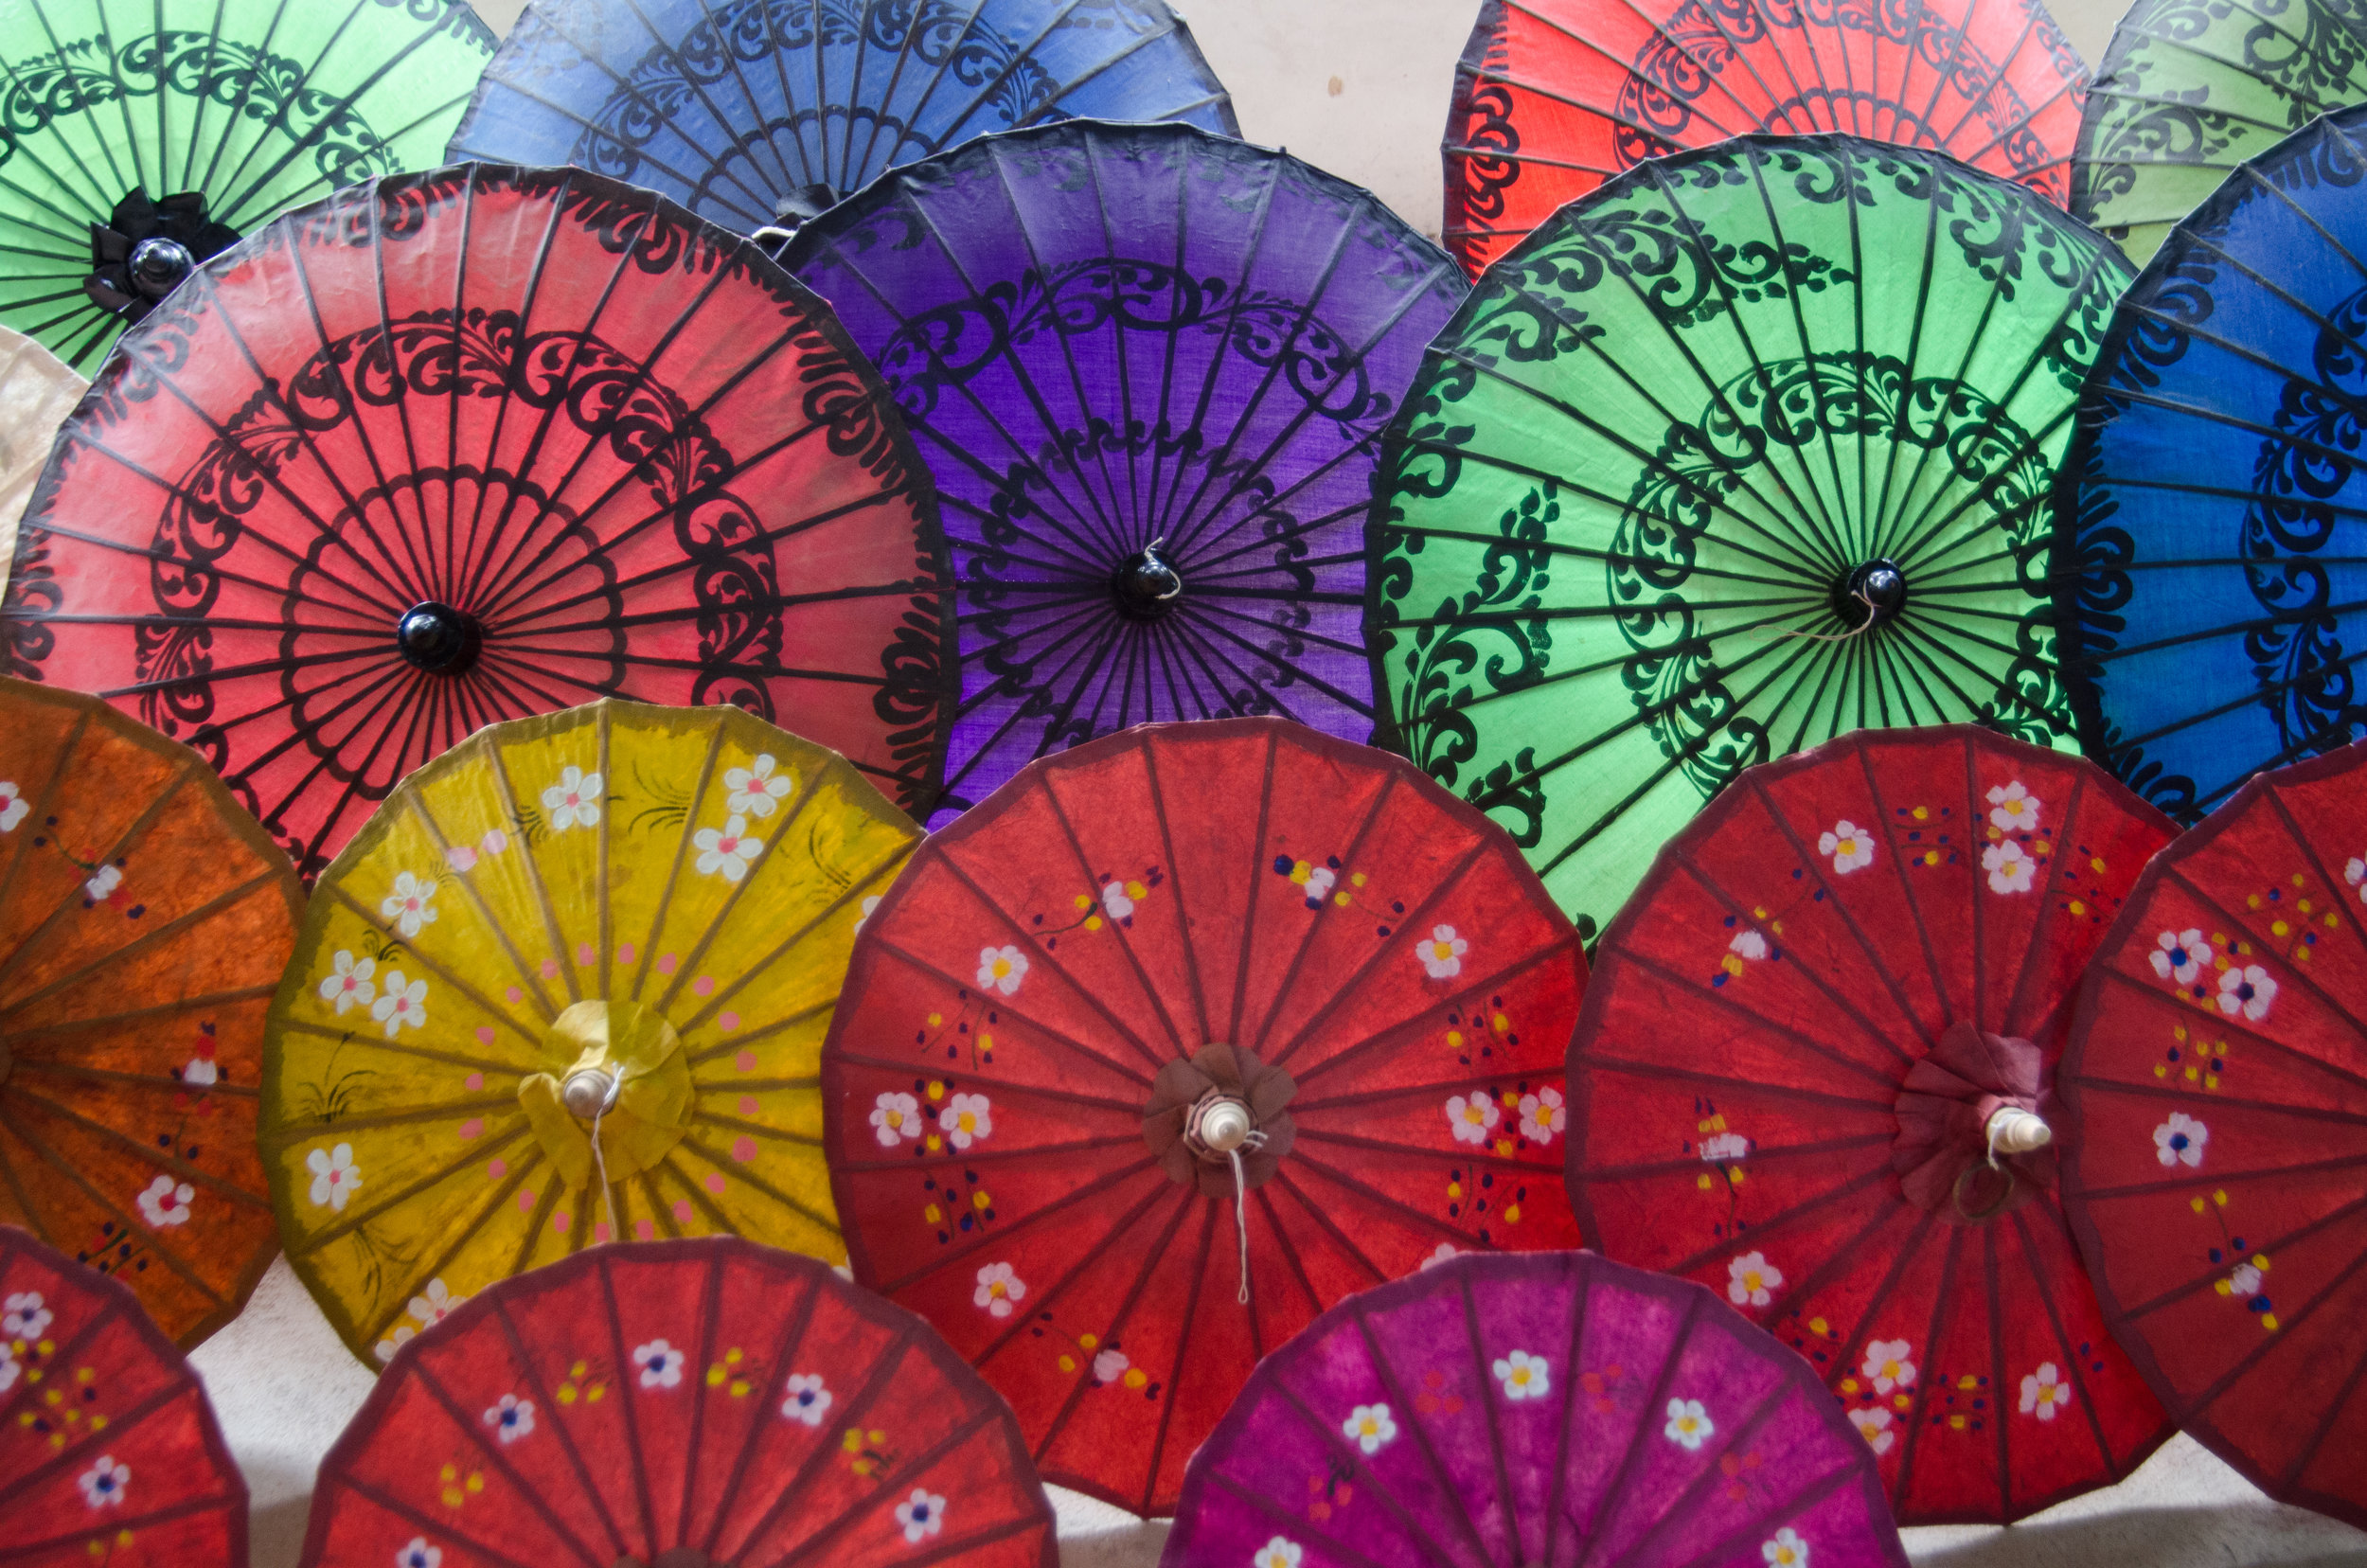 Umbrella factory, Inle Lake, Myanmar